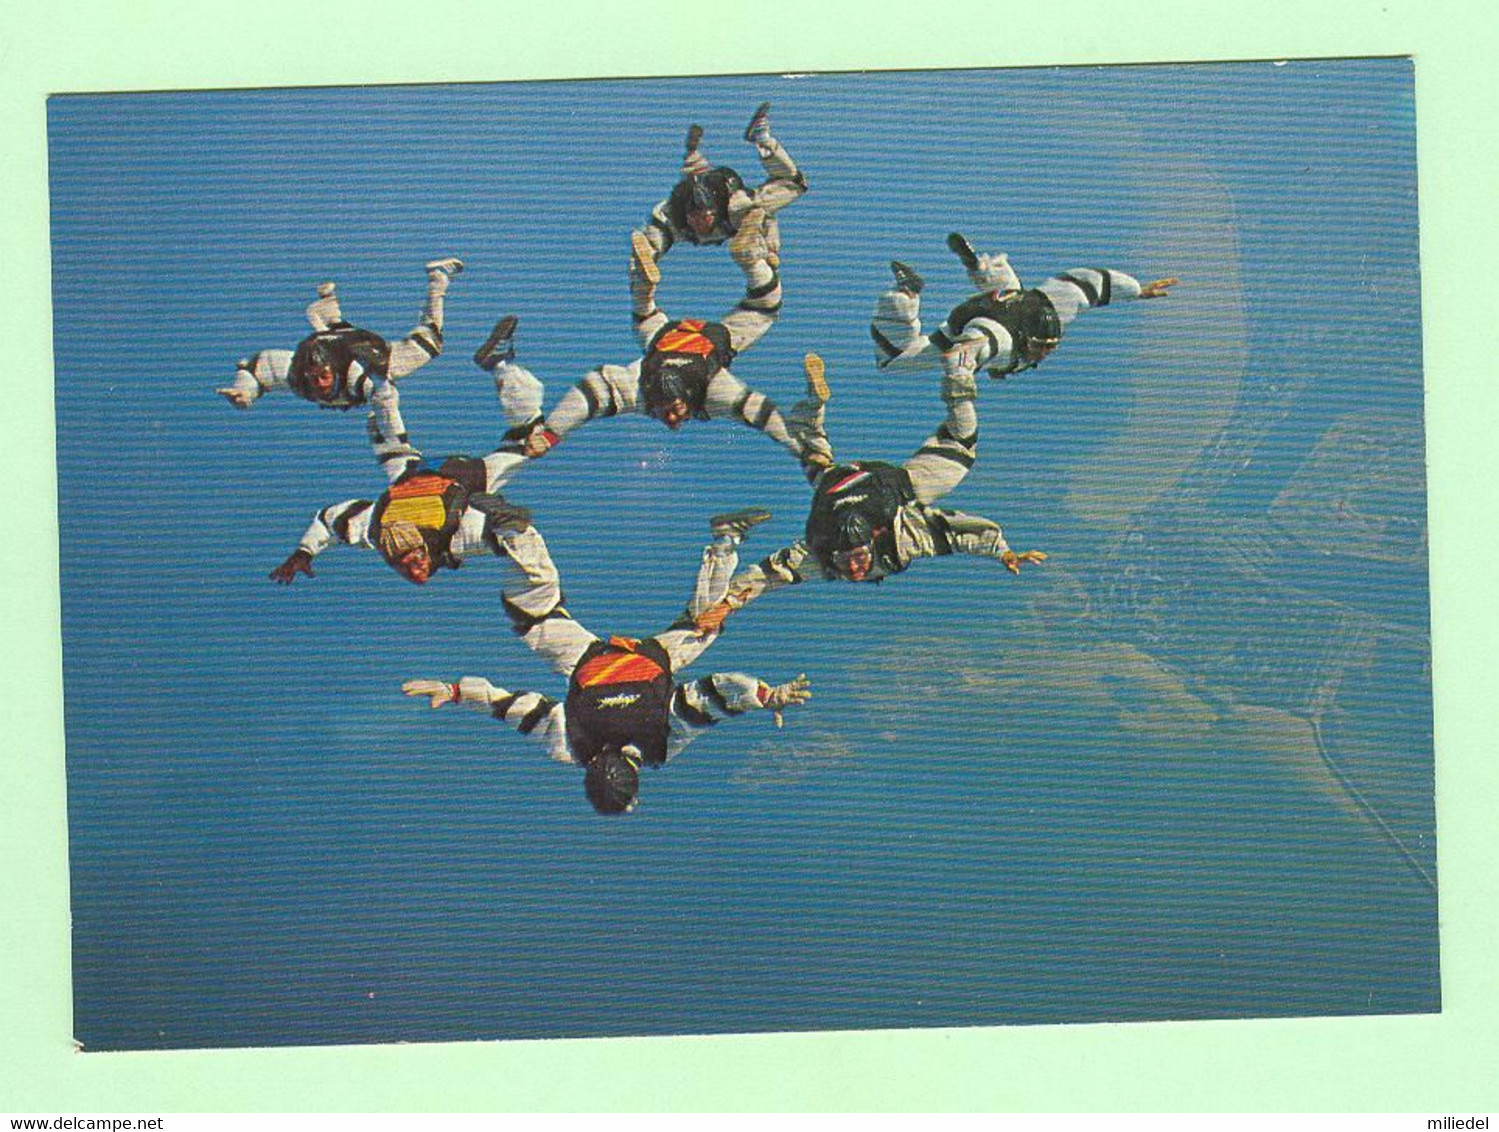 S091 - SPORT EXTREME - Parachutisme - Saut Relatif - Collection Dujardin, Pau - Paracaidismo